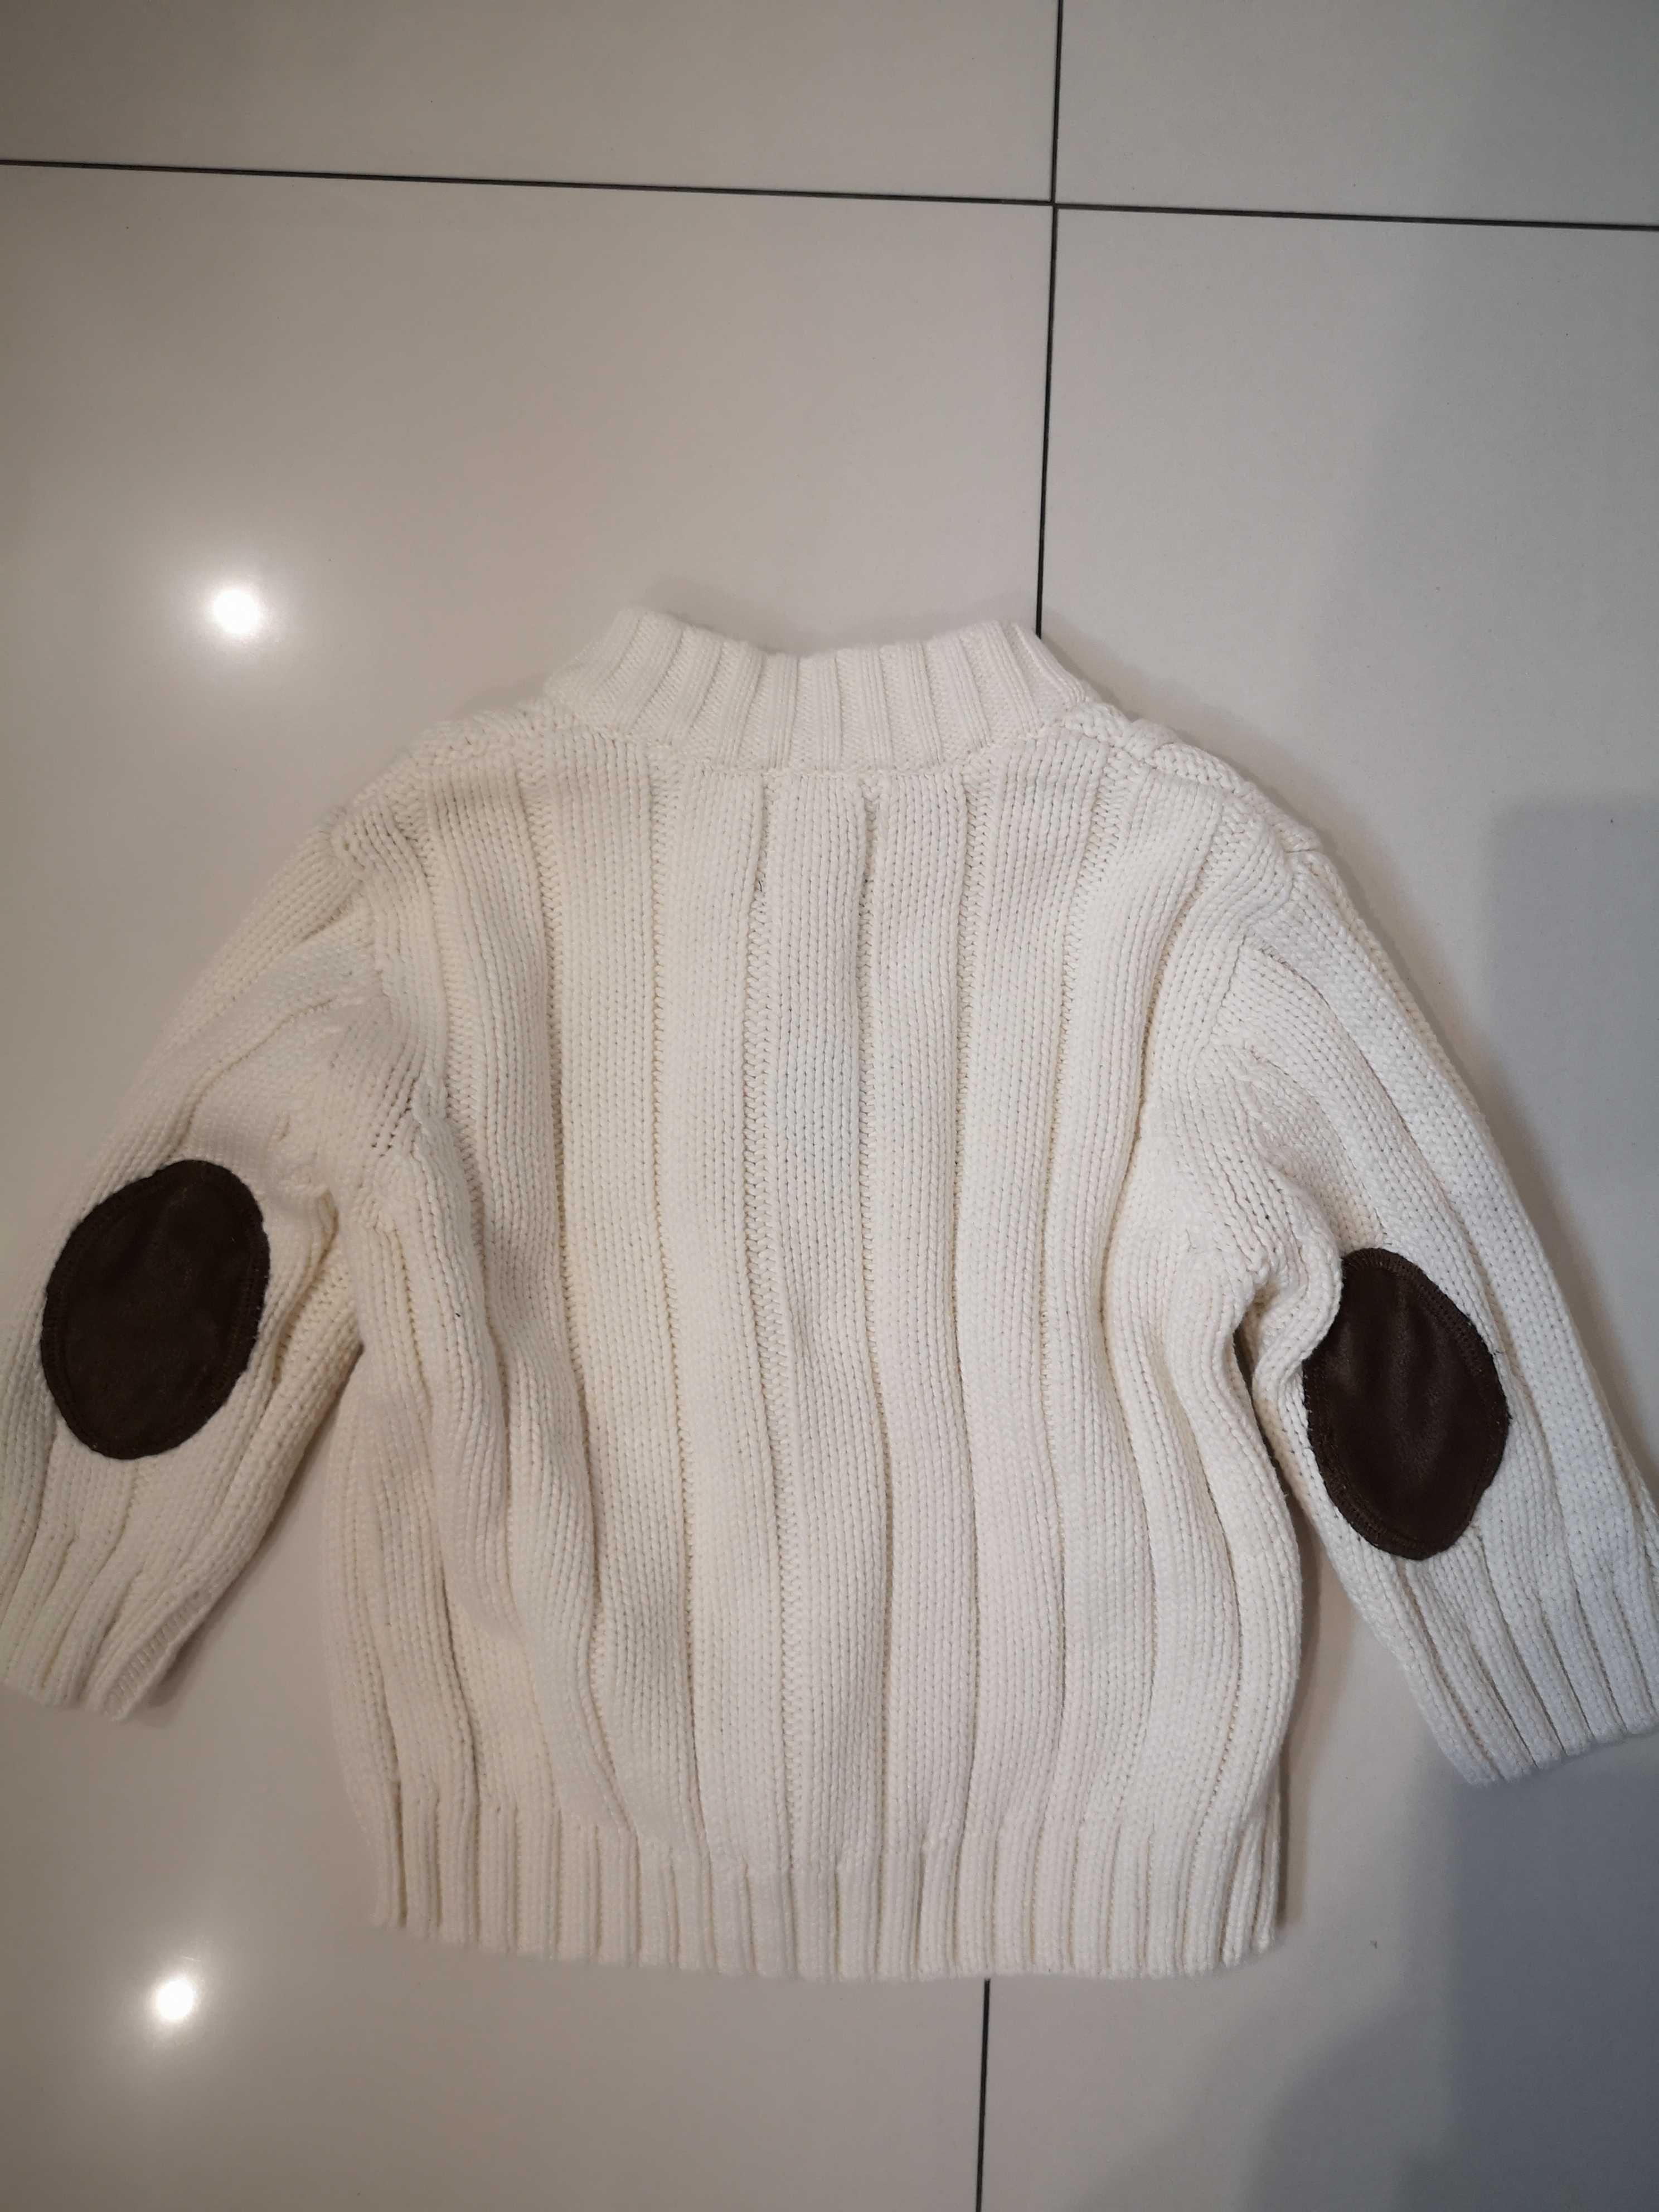 Zestaw ciepłych ubranek (swetry, bluzy polarowe, bluzka) - rozmiar 74